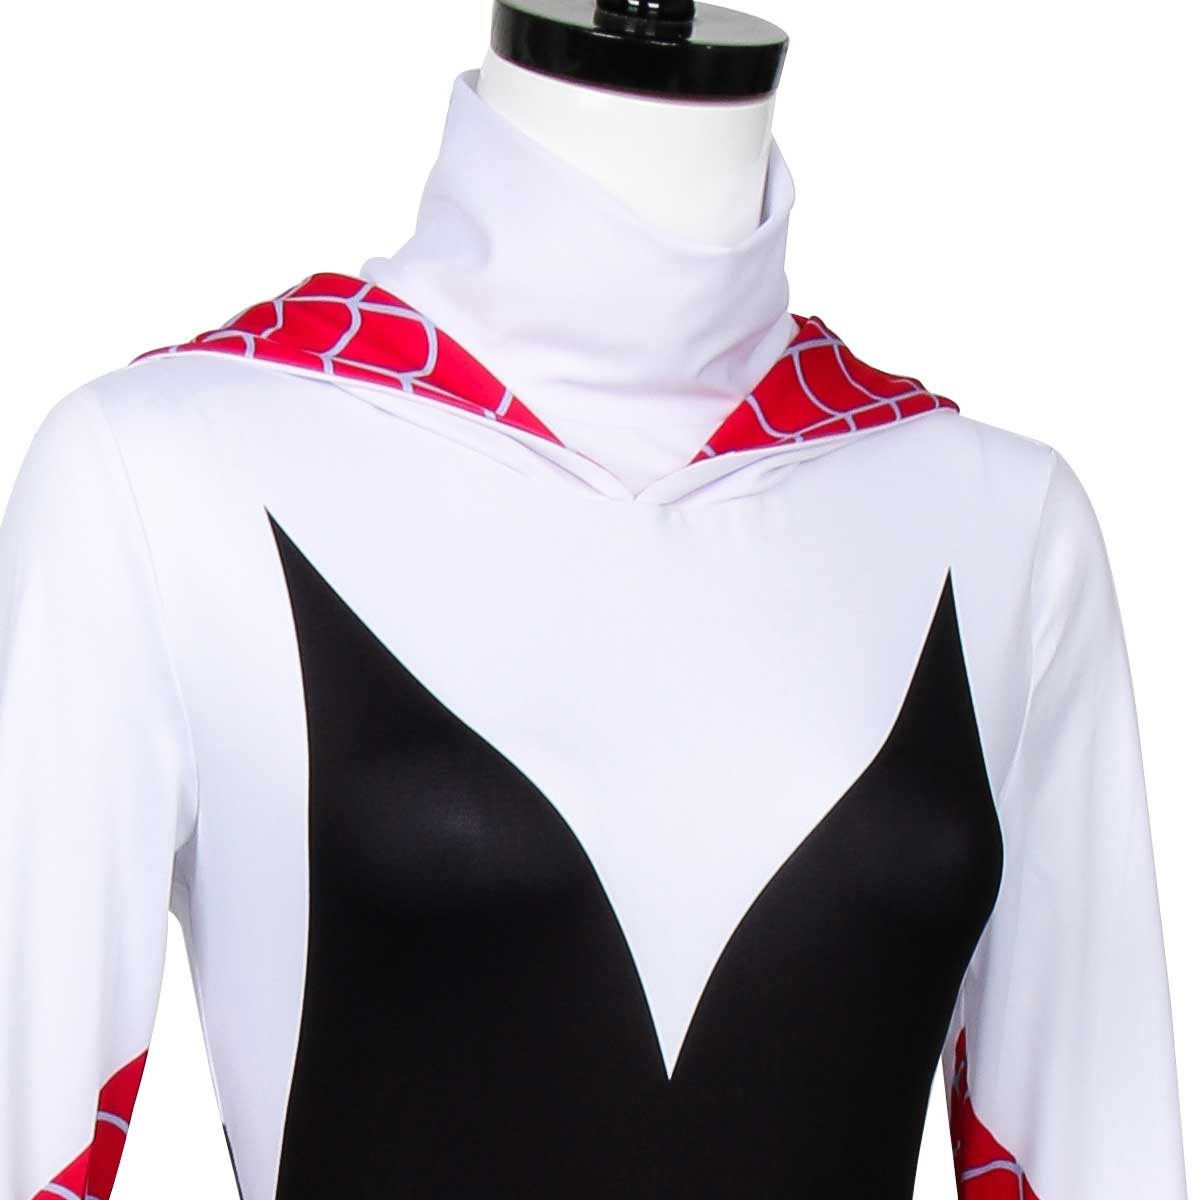 Spider-Man: Into the Spider-Verse Spider-Gwen Cosplay Costume